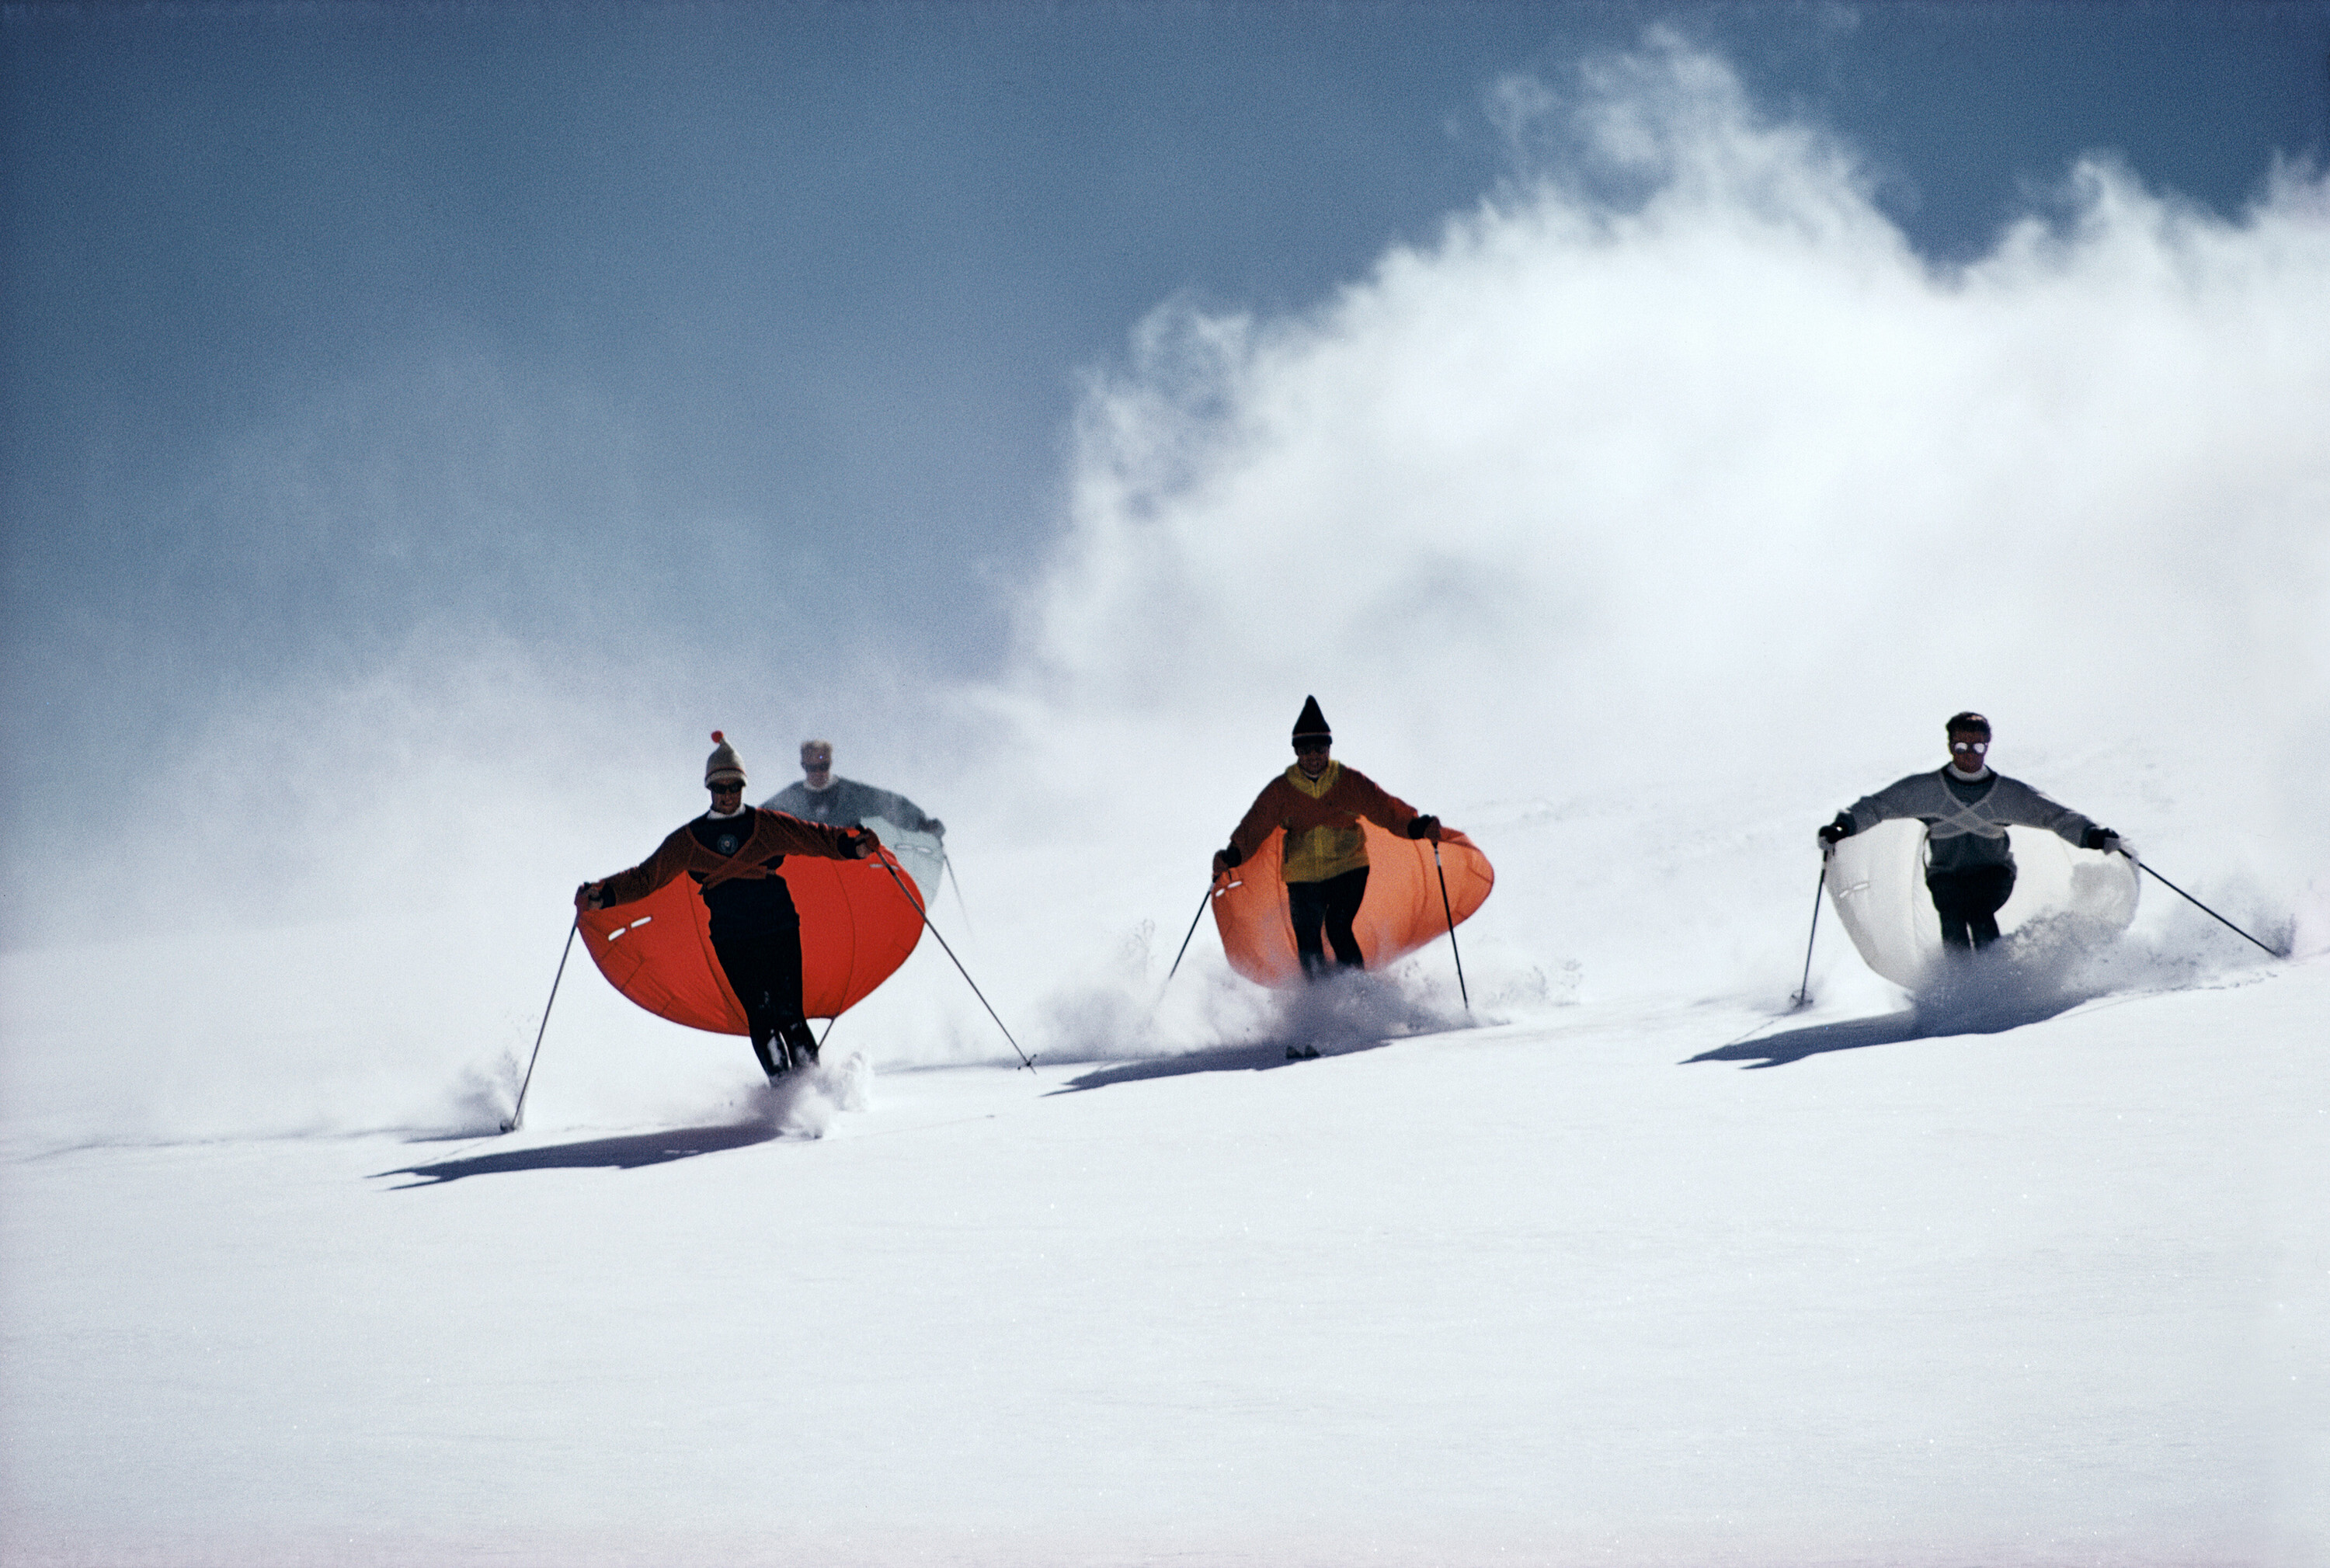 Лыжники в плащах, ок. 1967 г. Фотограф Слим Ааронс